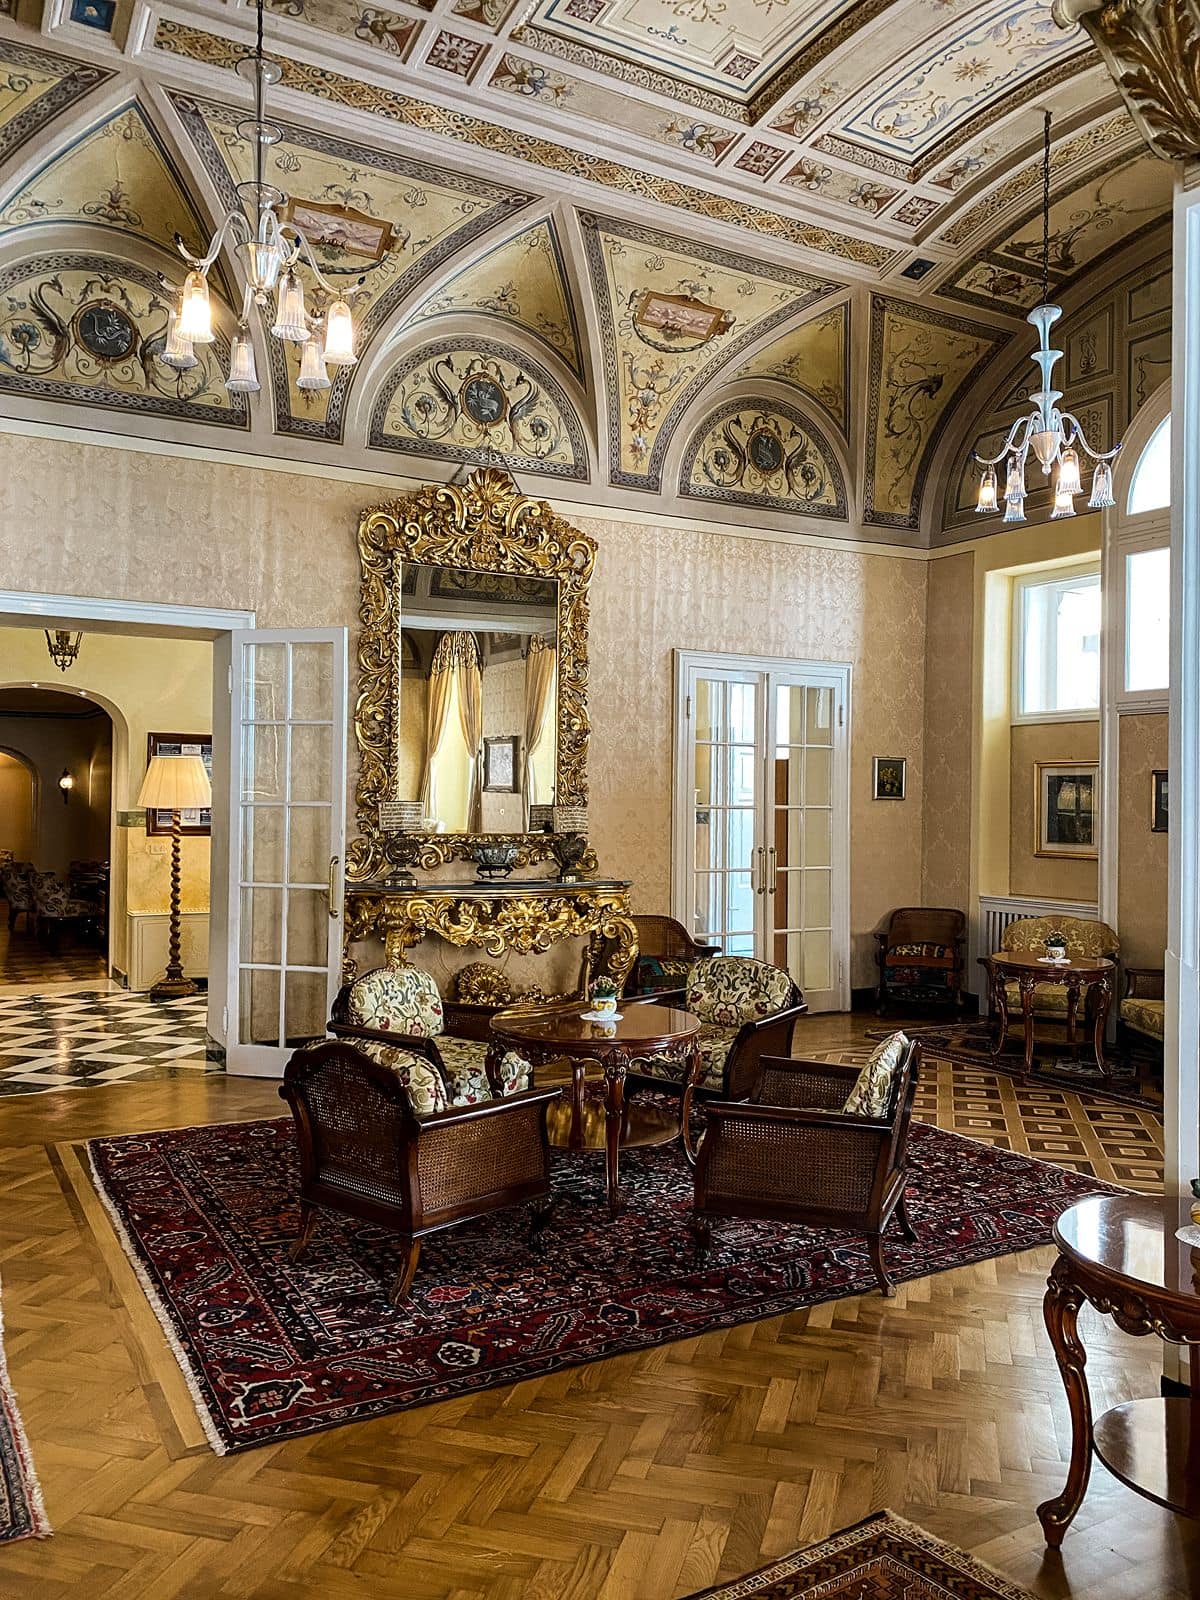 Elegant interior decor at Villa Serbelloni